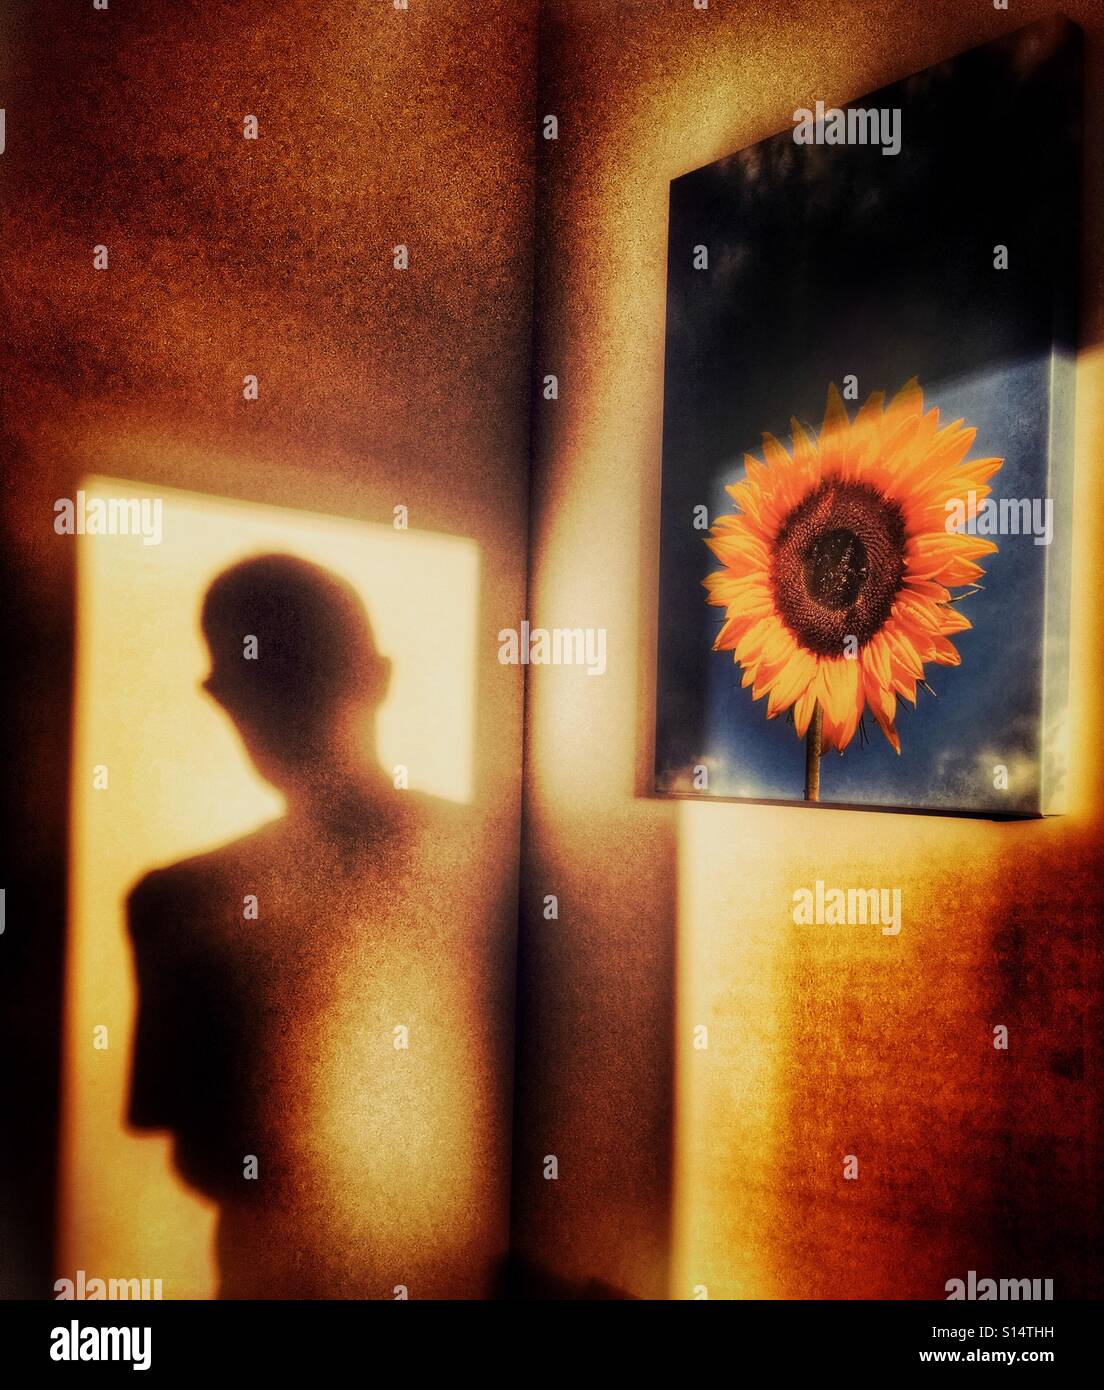 Schatten der Figur in der Tür des Saales mit Sonnenblumen Bild an der Wand Stockfoto